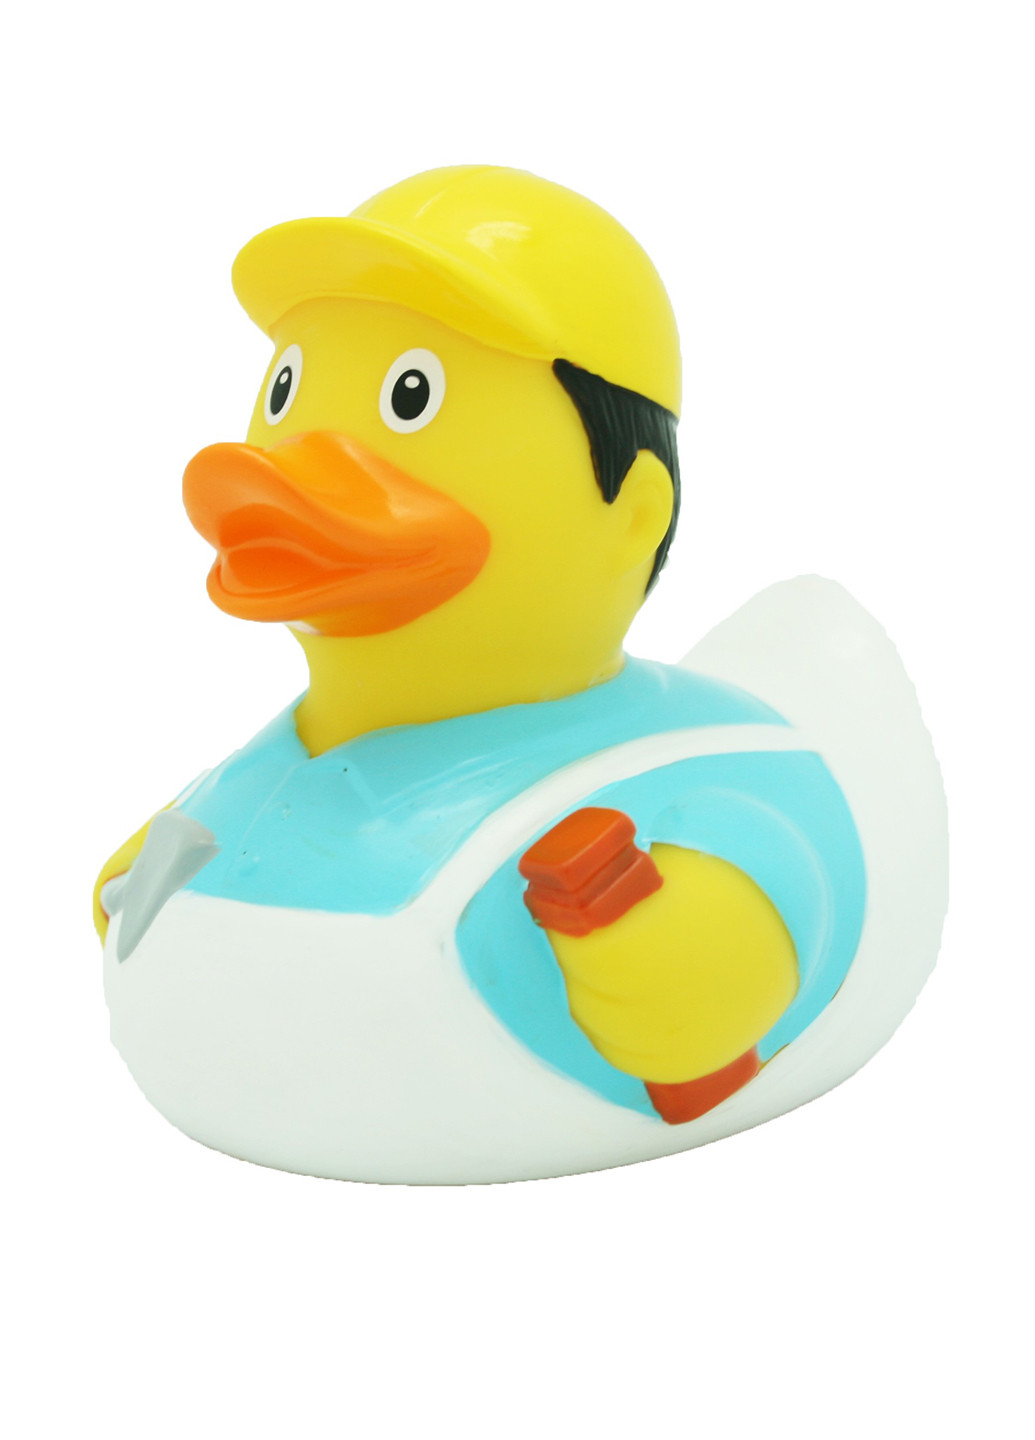 Игрушка для купания Утка Строитель, 8,5x8,5x7,5 см Funny Ducks (250618732)